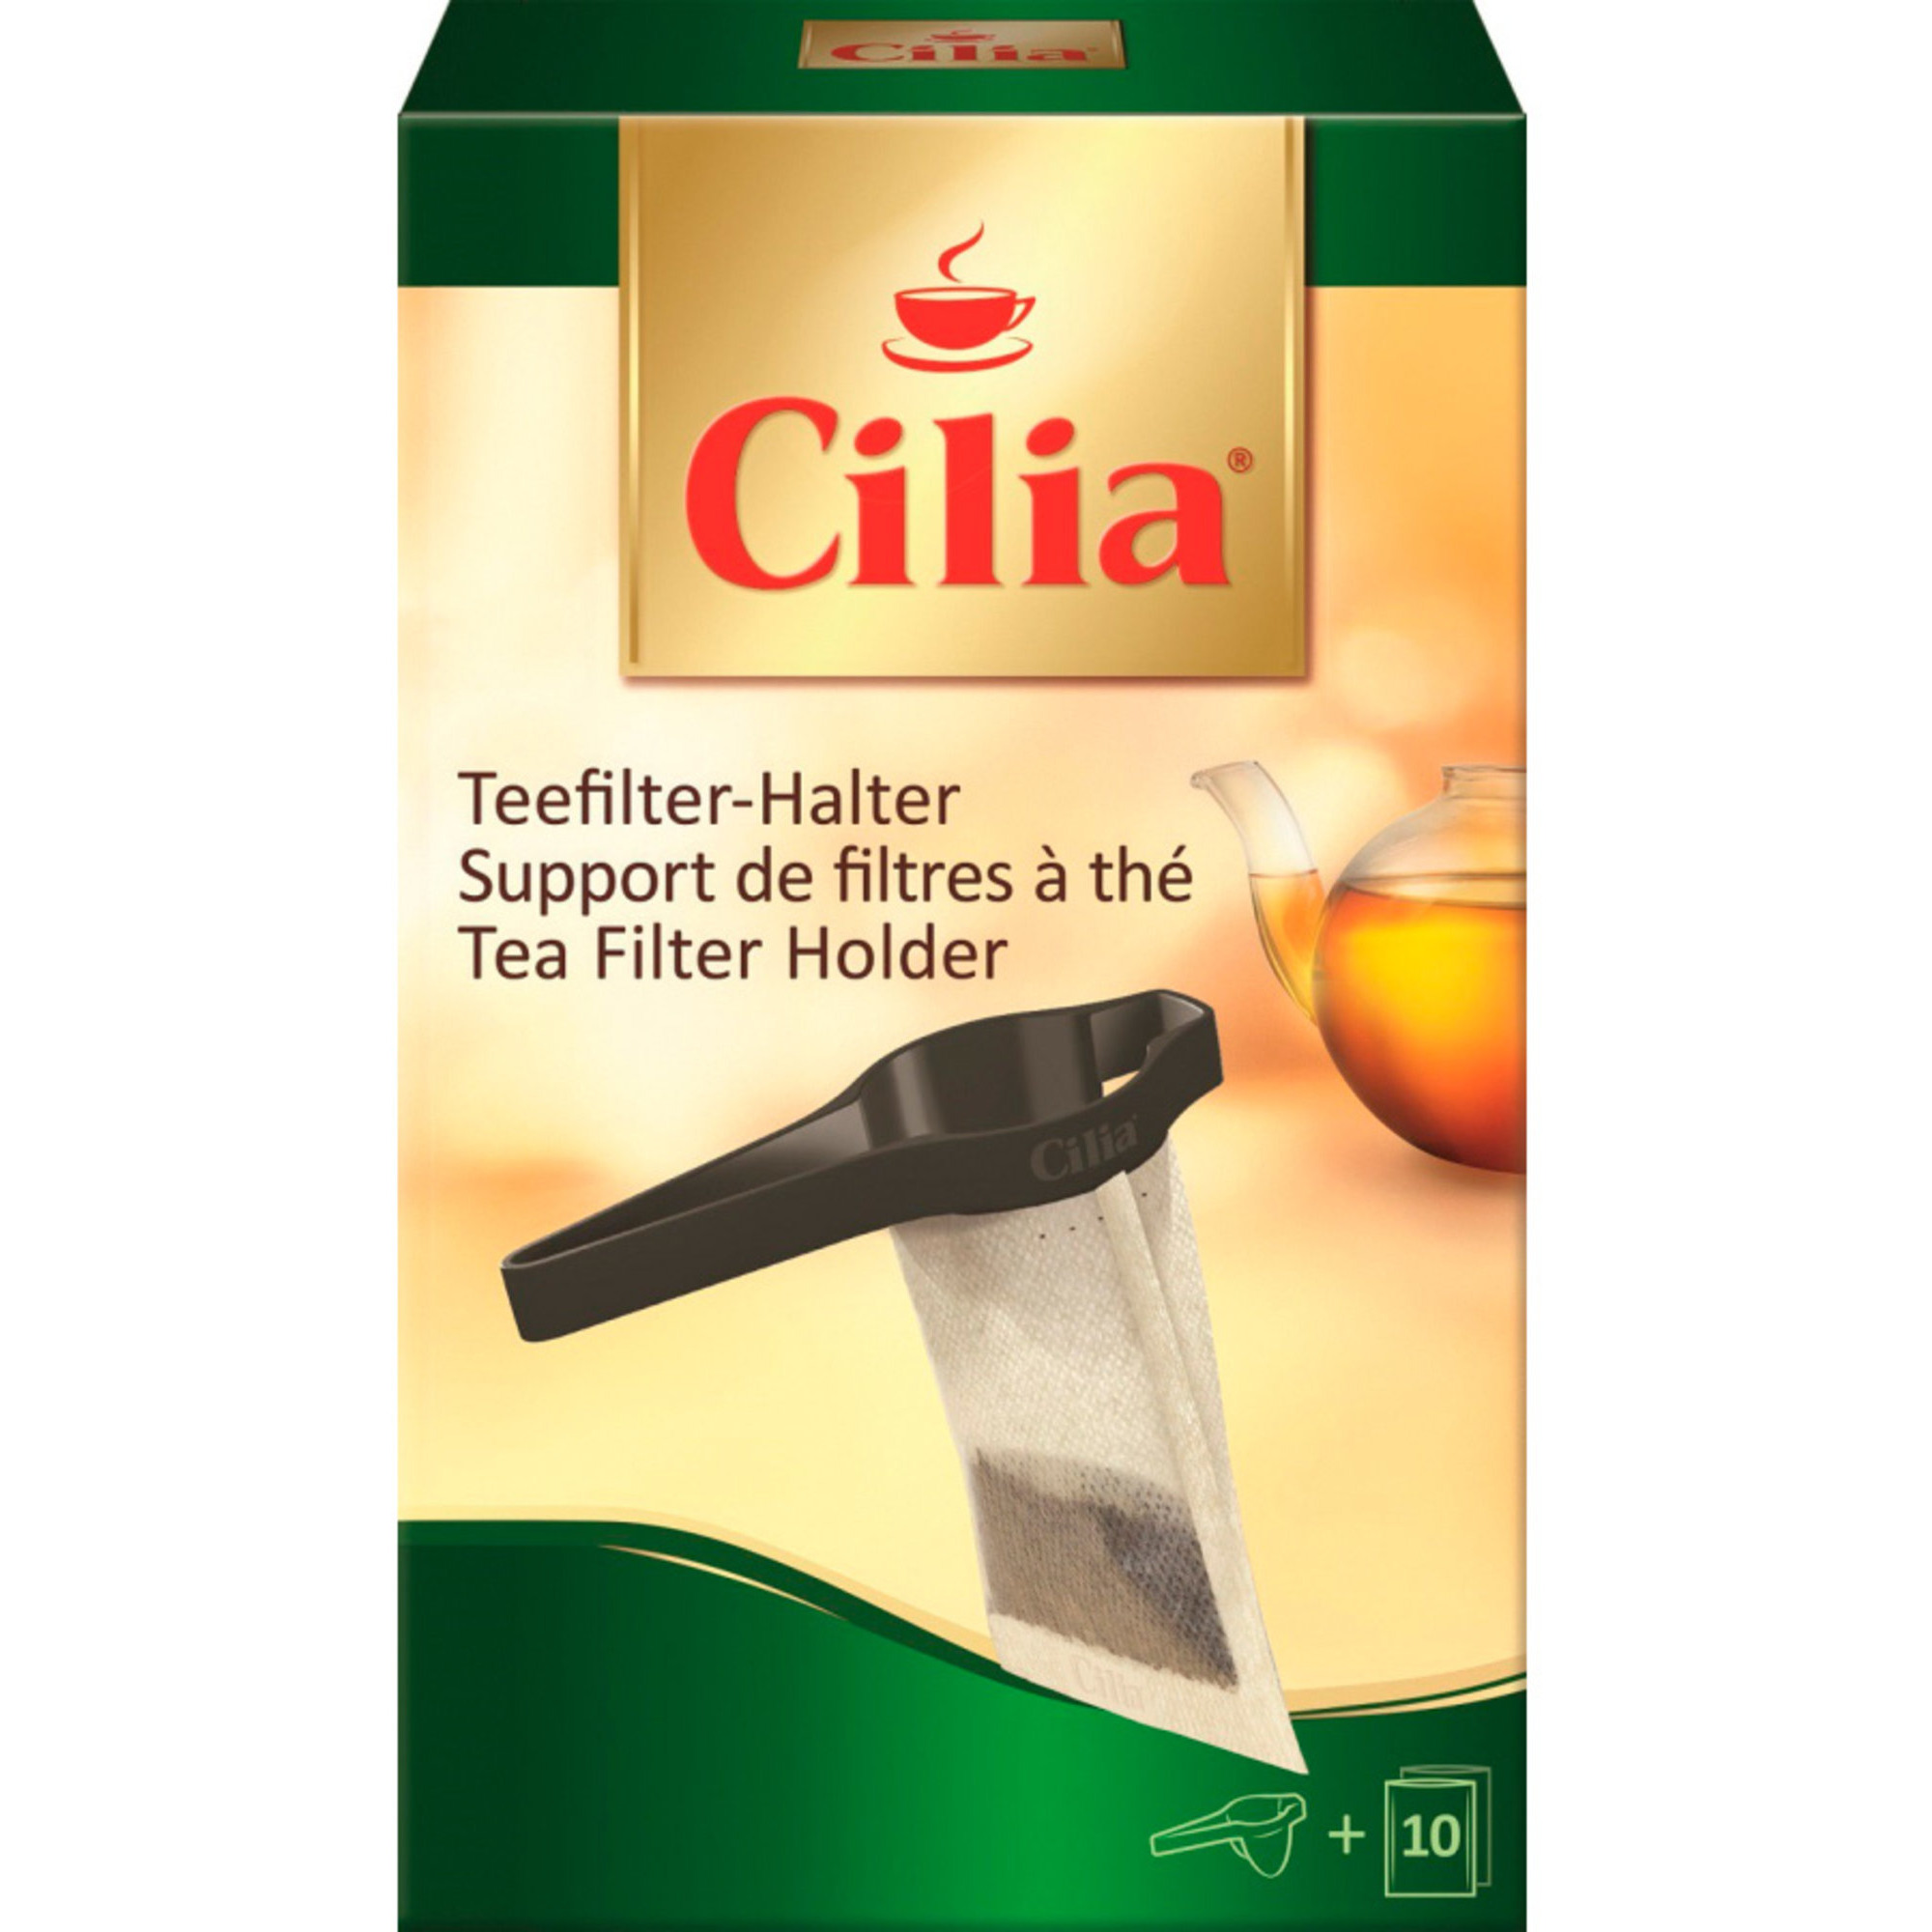 Melitta Cilia Tefilterholder og 10 tefiltre